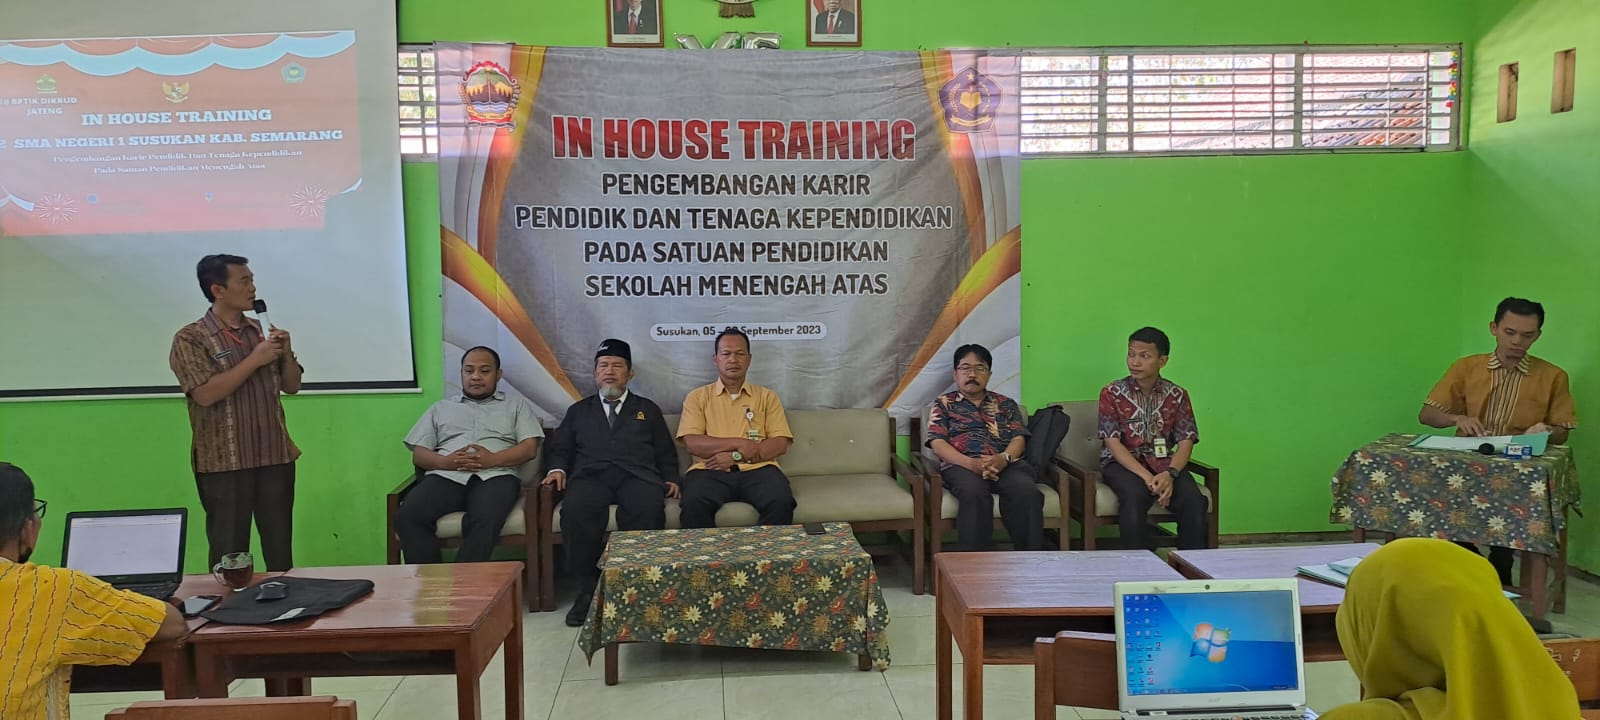 Guru & Karyawan  SMAN 1 Susukan Kab. Semarang, Ikuti In House Training Tema ‘Pengembangan Karir Pendidik & Tenaga Kependidikan Pada Satuan Pendidikan Sekolah Menengah Atas’